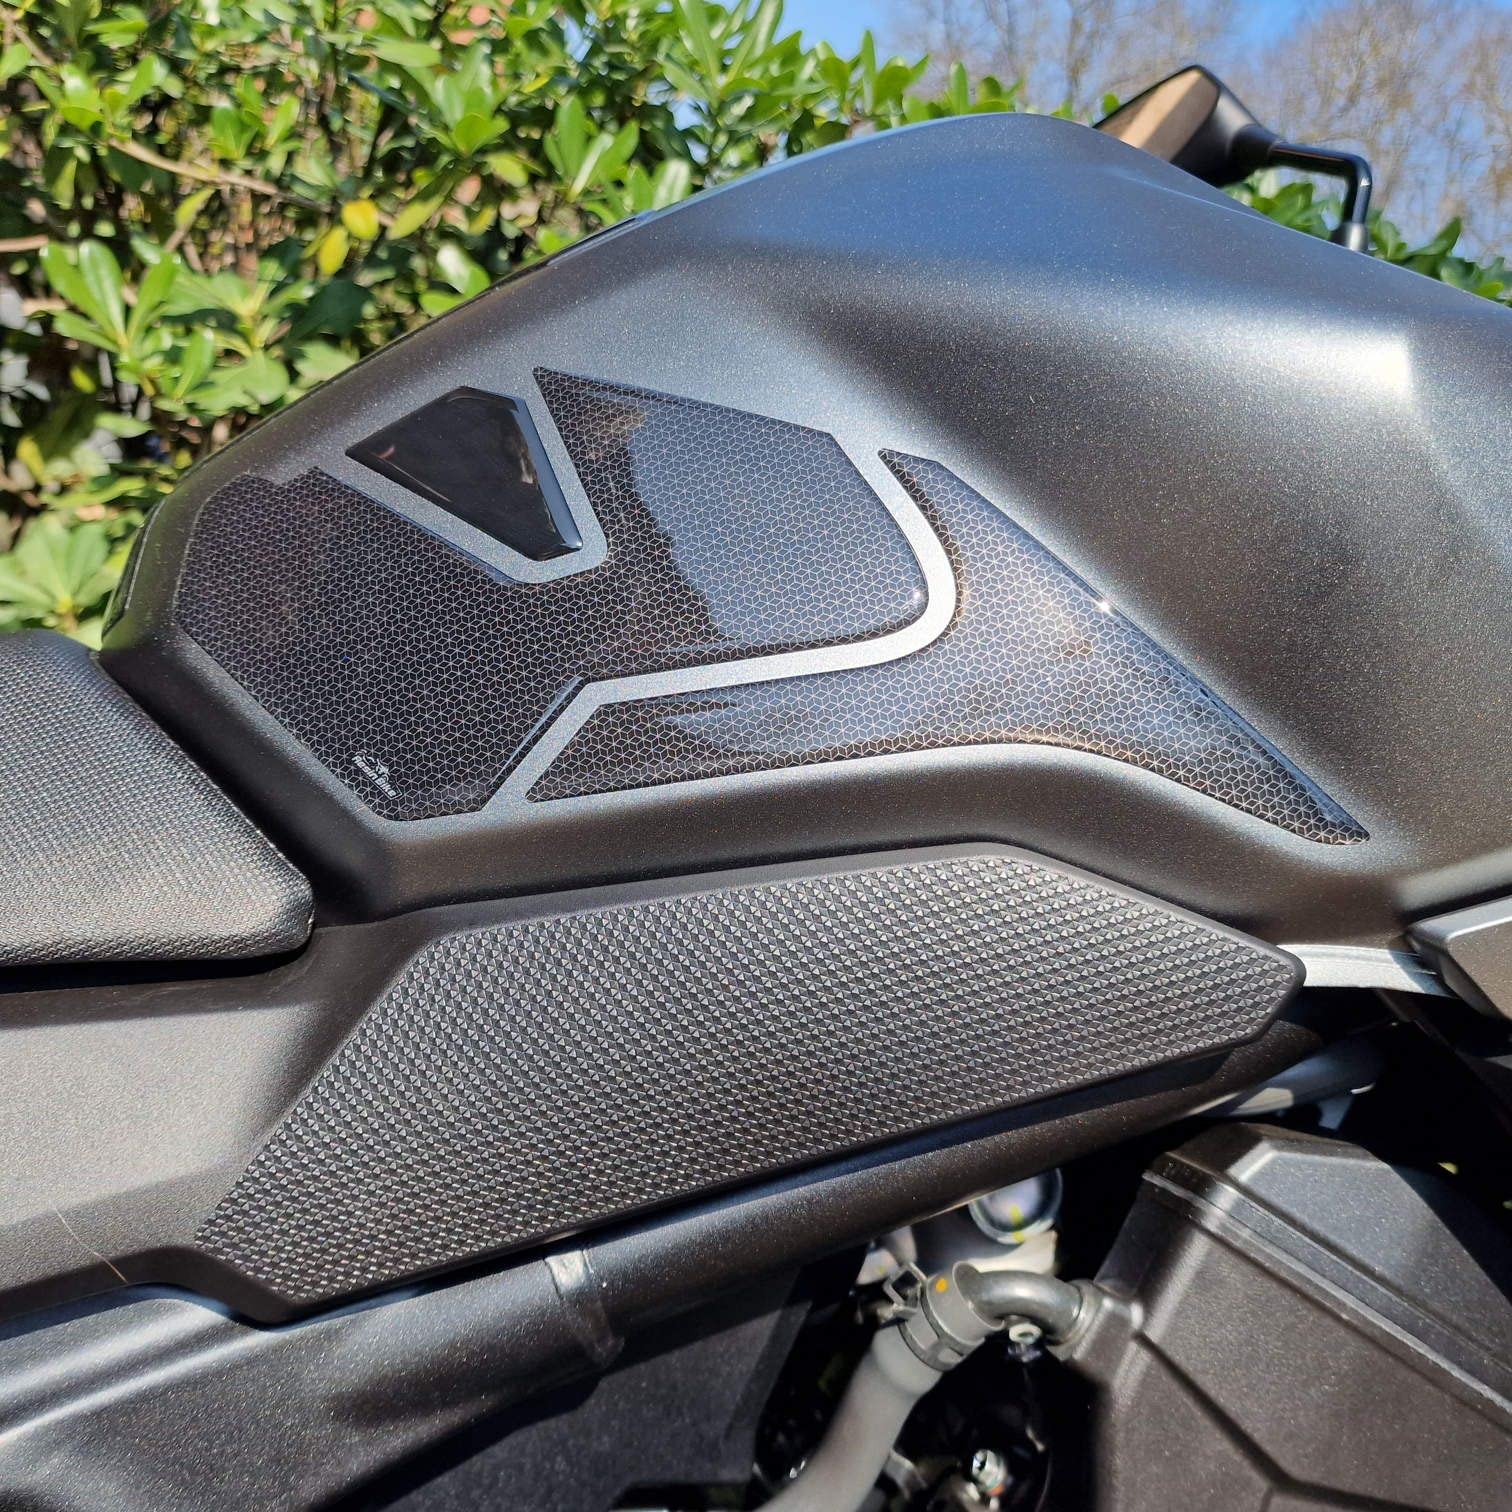 Resin Bike Aufkleber für Motorrad Kompatibel mit Honda Hornet CB 750 2023. Seitenschutz für den Tank vor Stößen und Kratzern. 3D-Harzklebstoff - Stickers - Made in Italy von Resin Bike